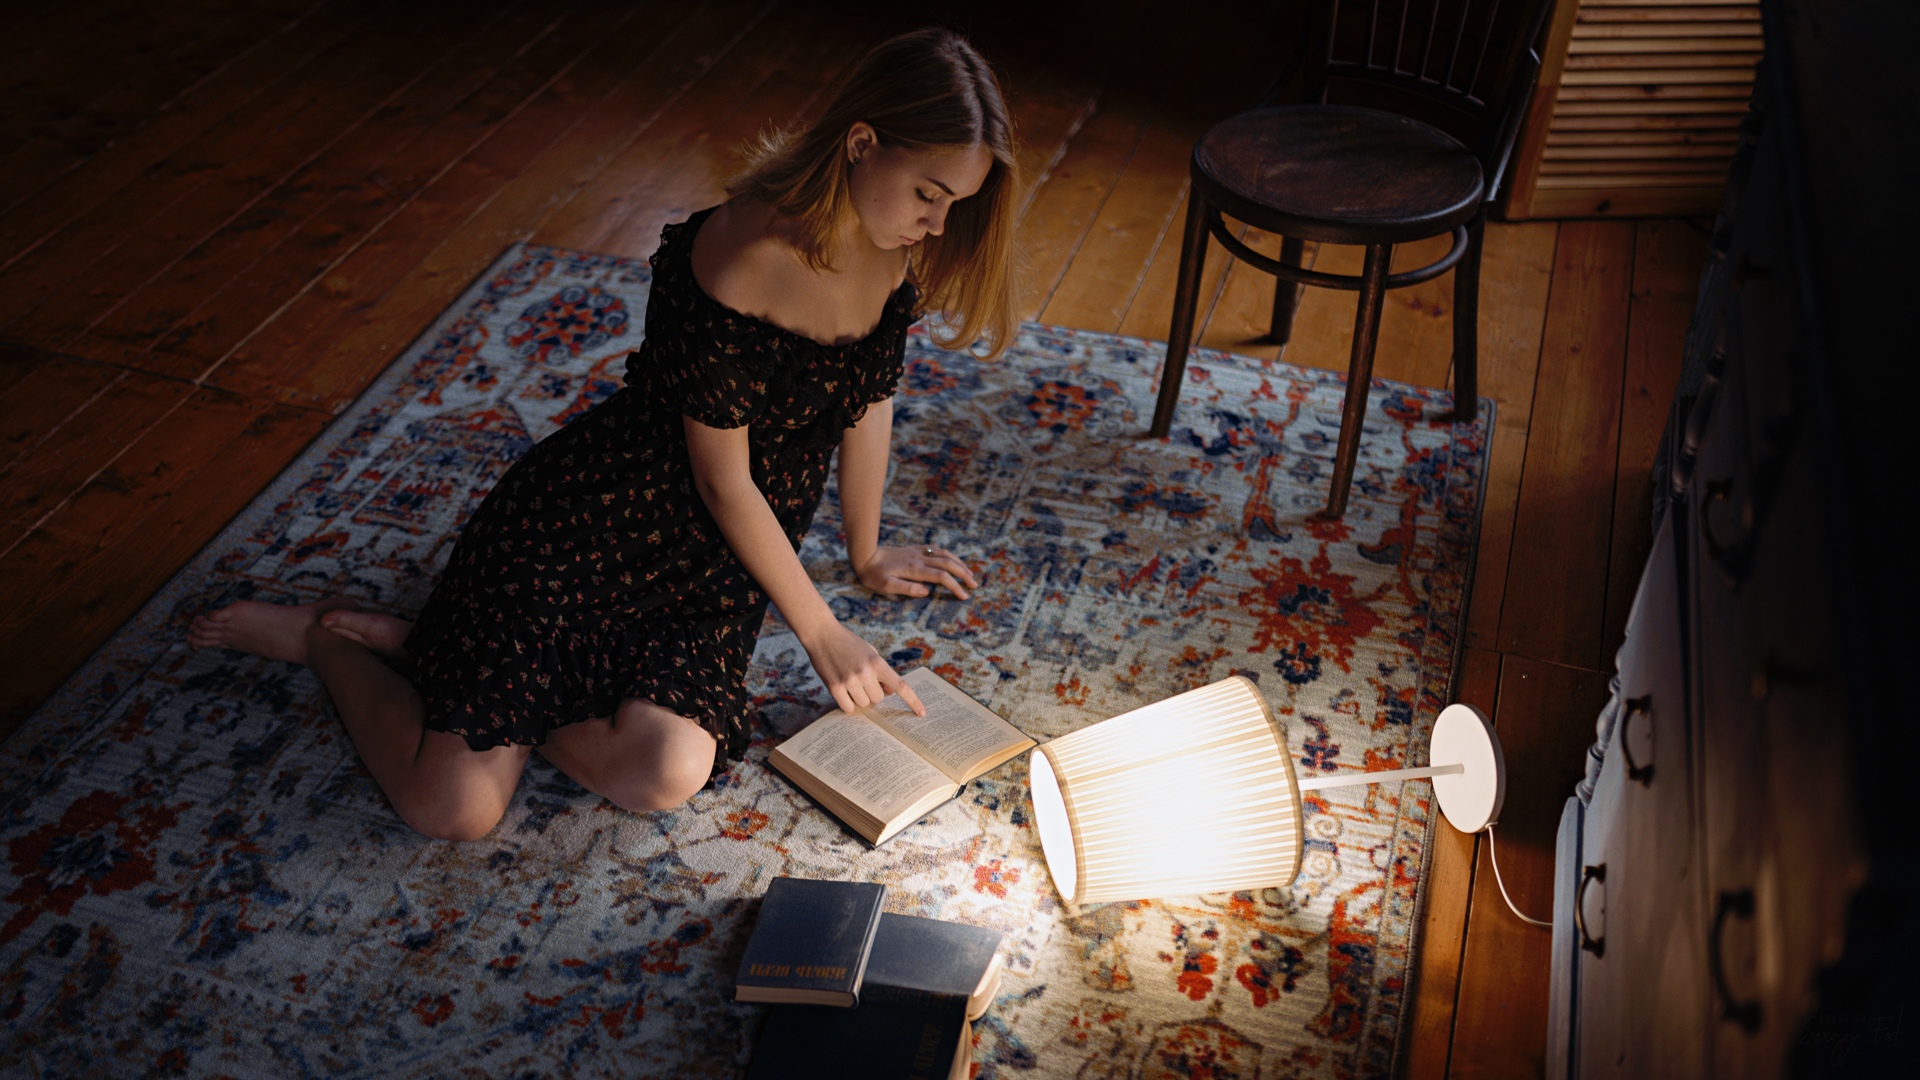 Women Model Brunette Indoors Portrait On The Floor Carpets Chair Lamp Books Reading Dress Bare Shoul 1920x1080